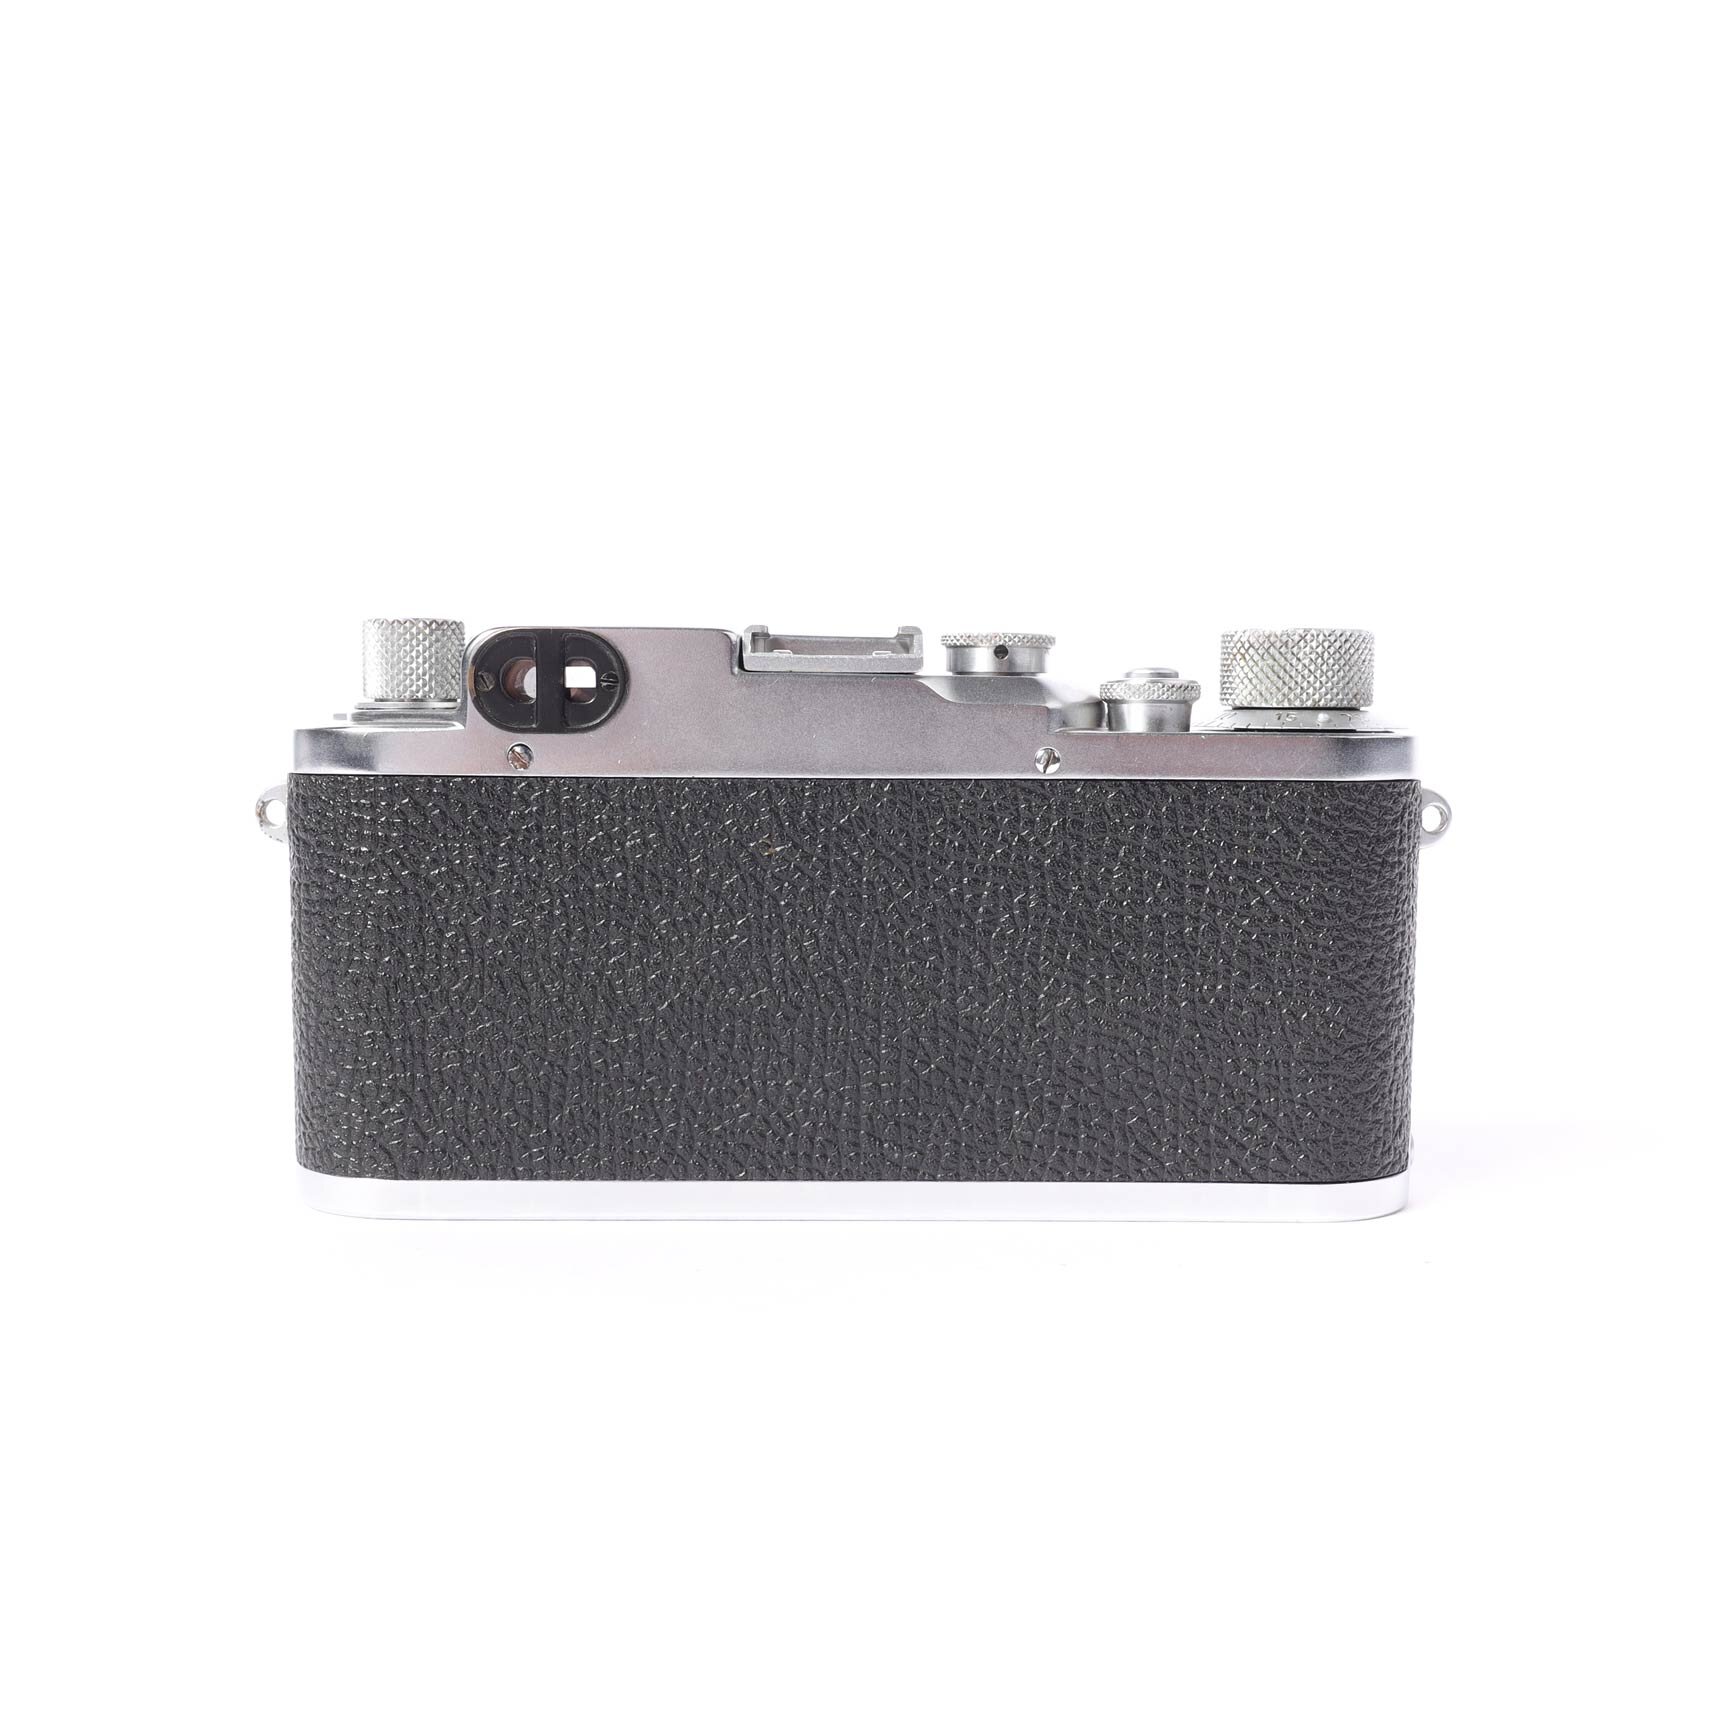 Leitz Leica IIIc Elmar 3,5/50 mm